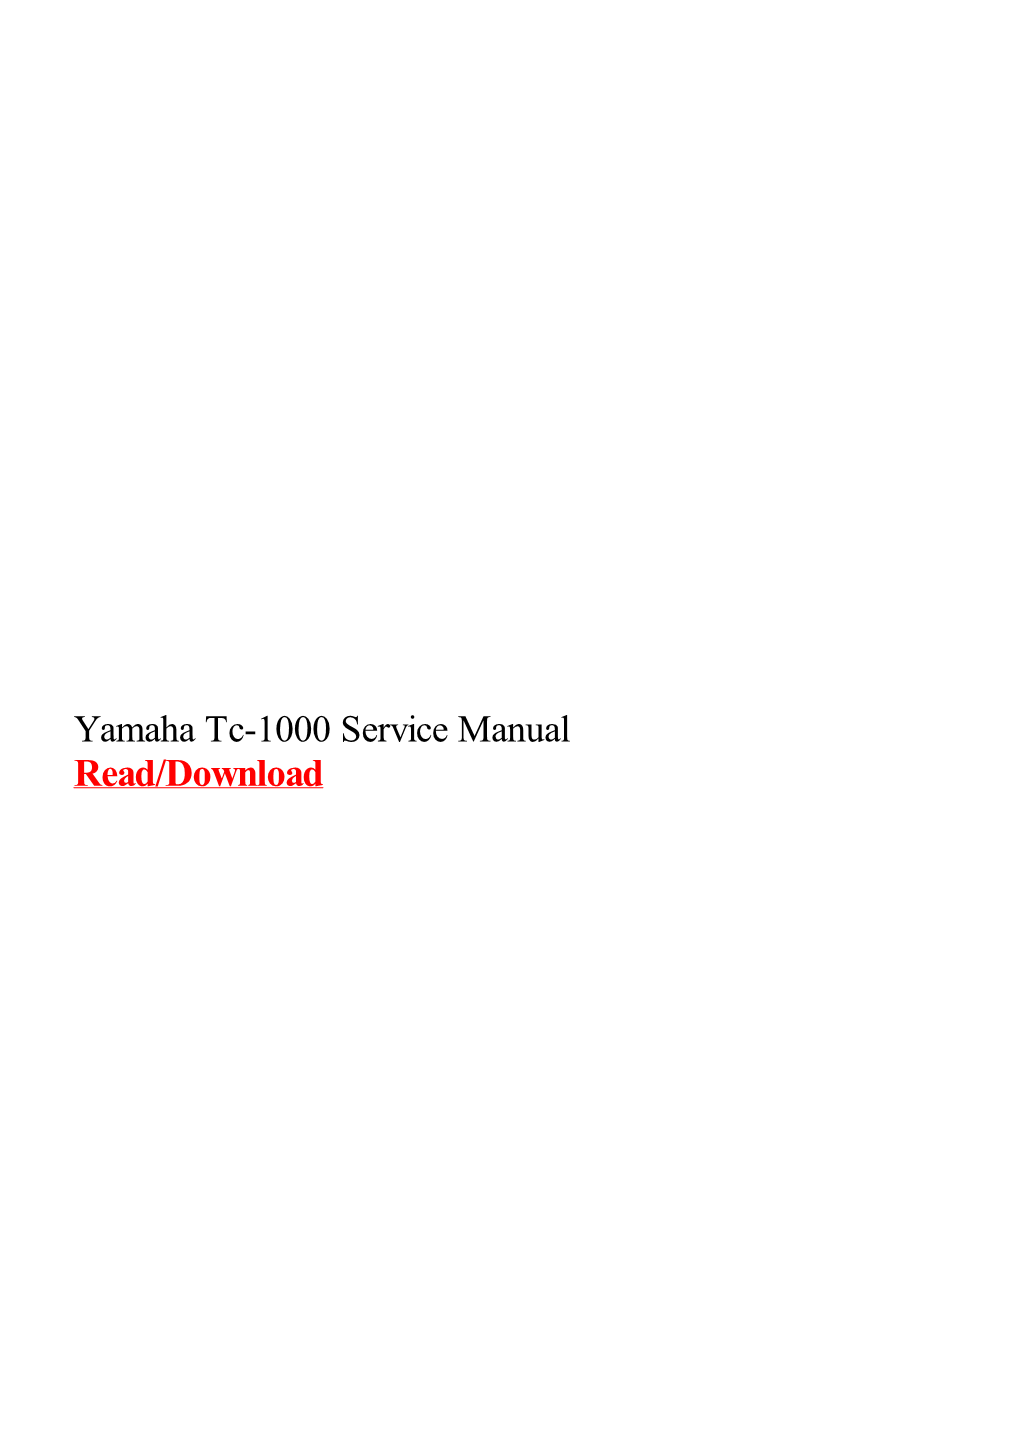 Yamaha Tc-1000 Service Manual